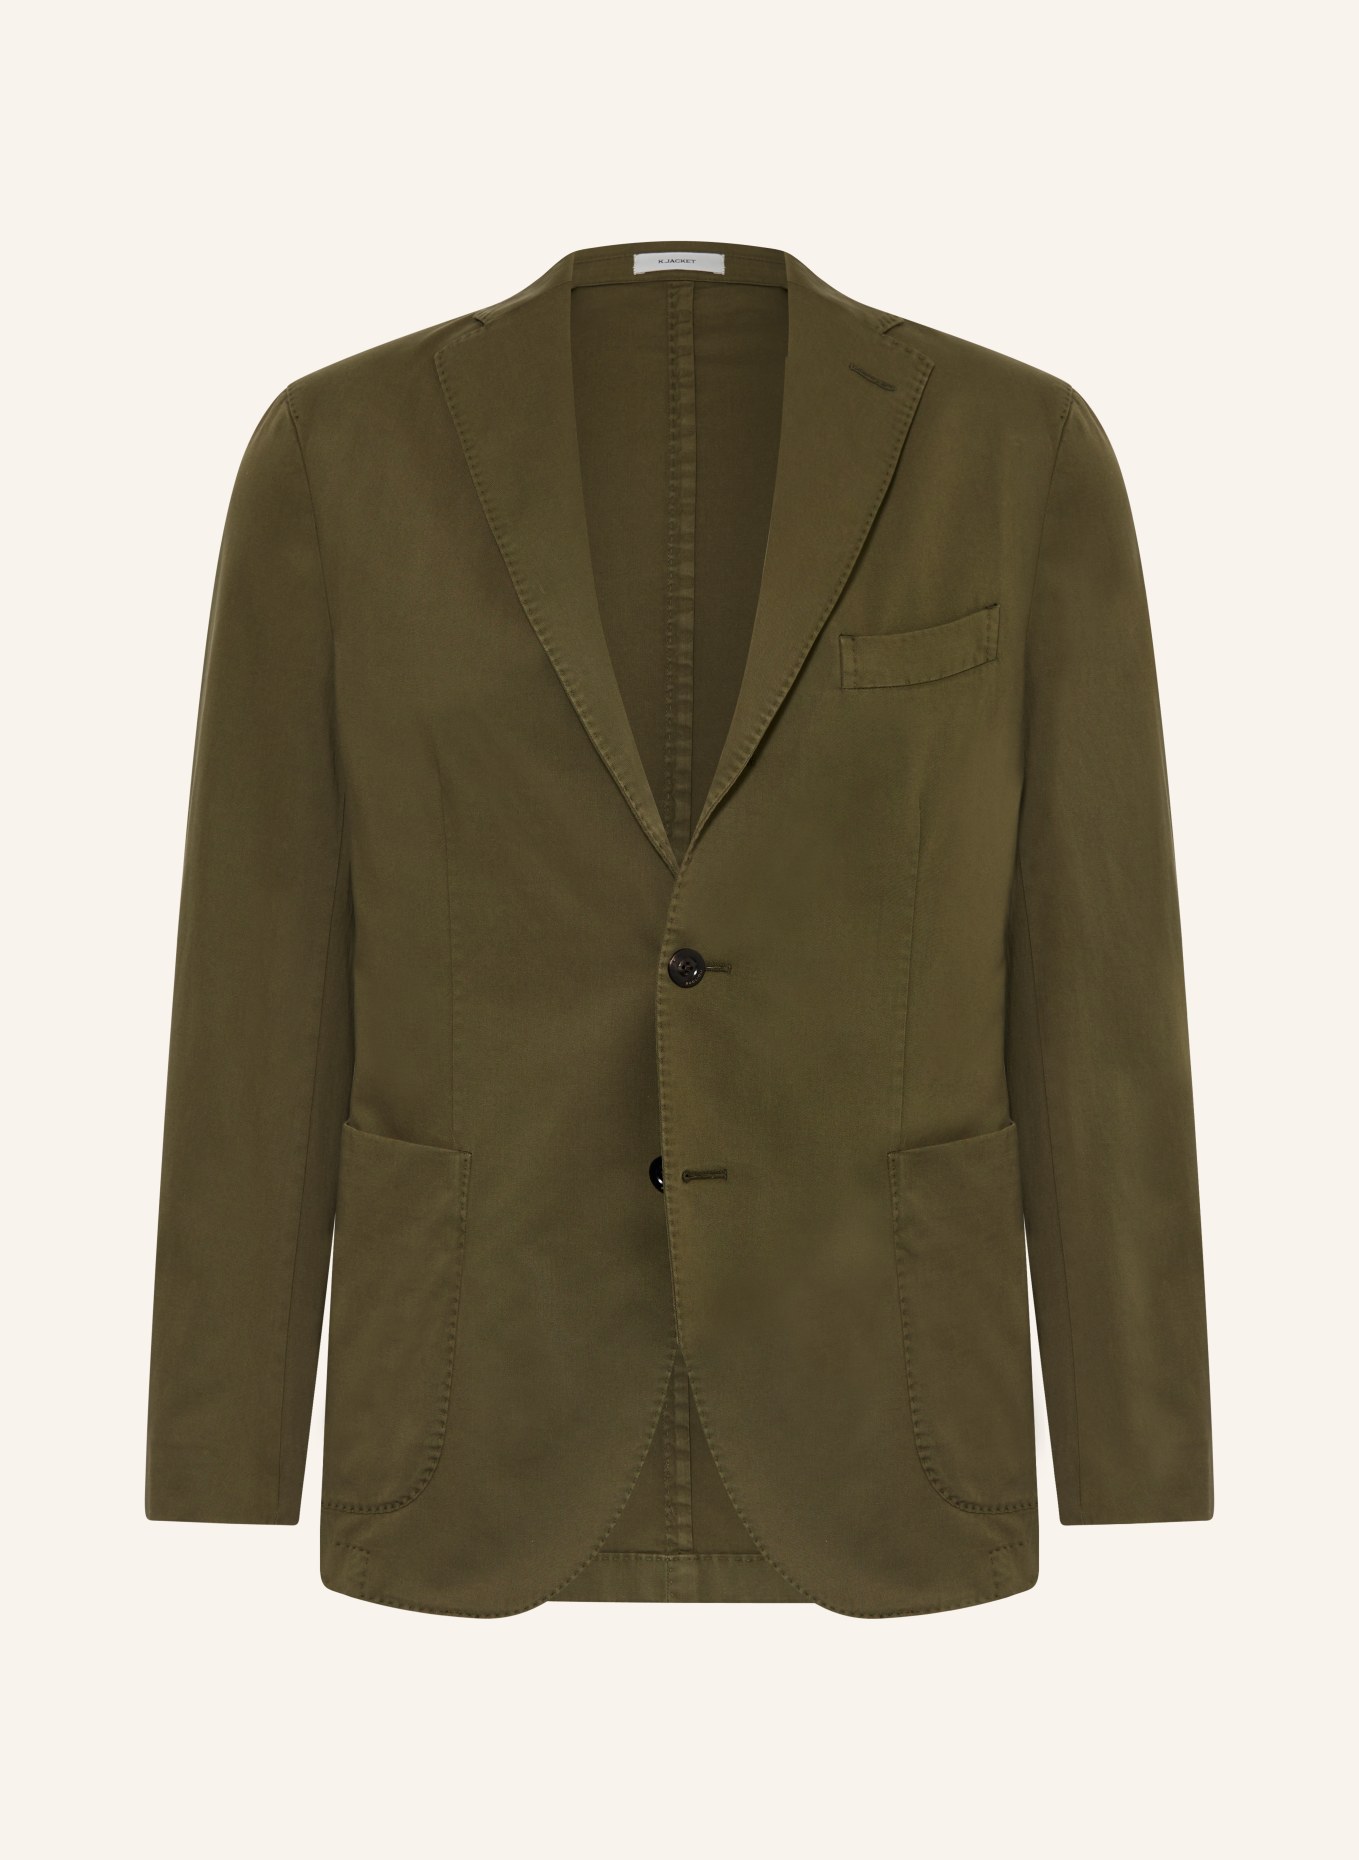 BOGLIOLI Tailored jacket extra slim fit, Color: OLIVE (Image 1)